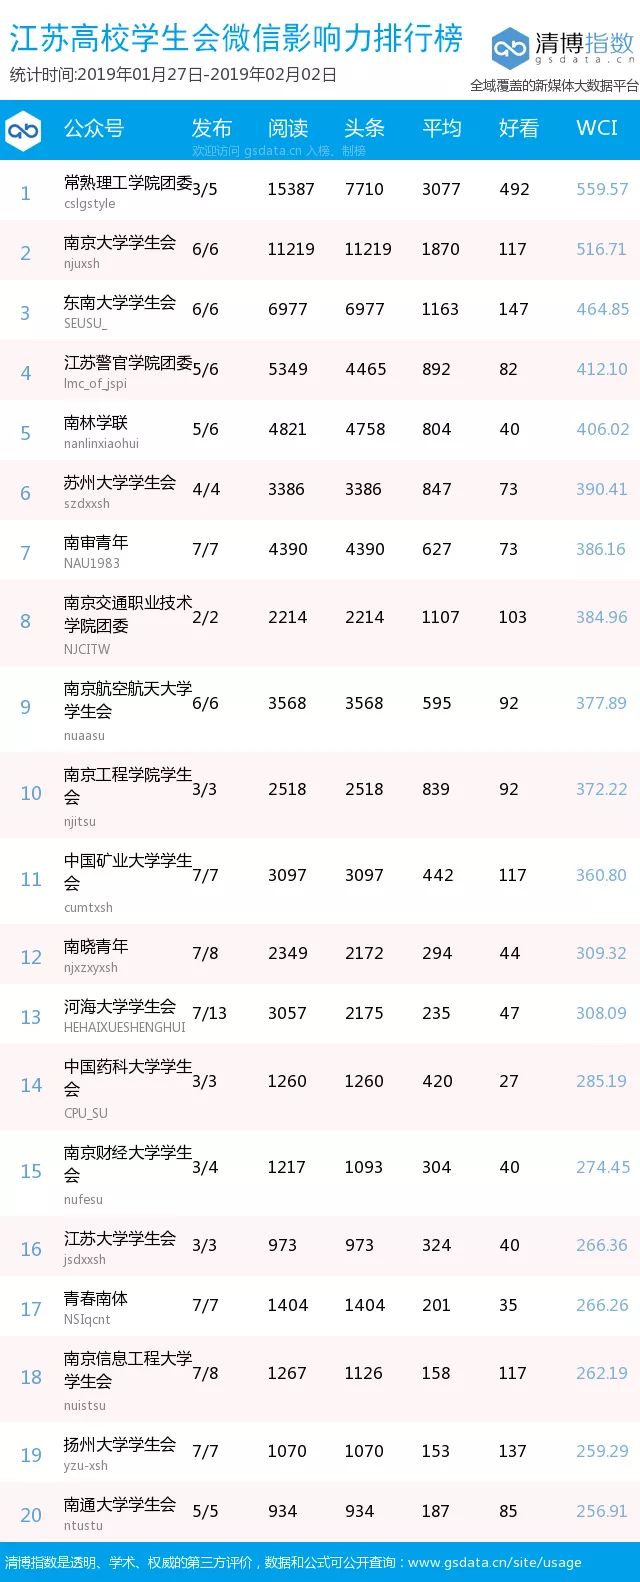 榜单 | 江苏高校学生组织微信影响力排行榜（第54-55期）